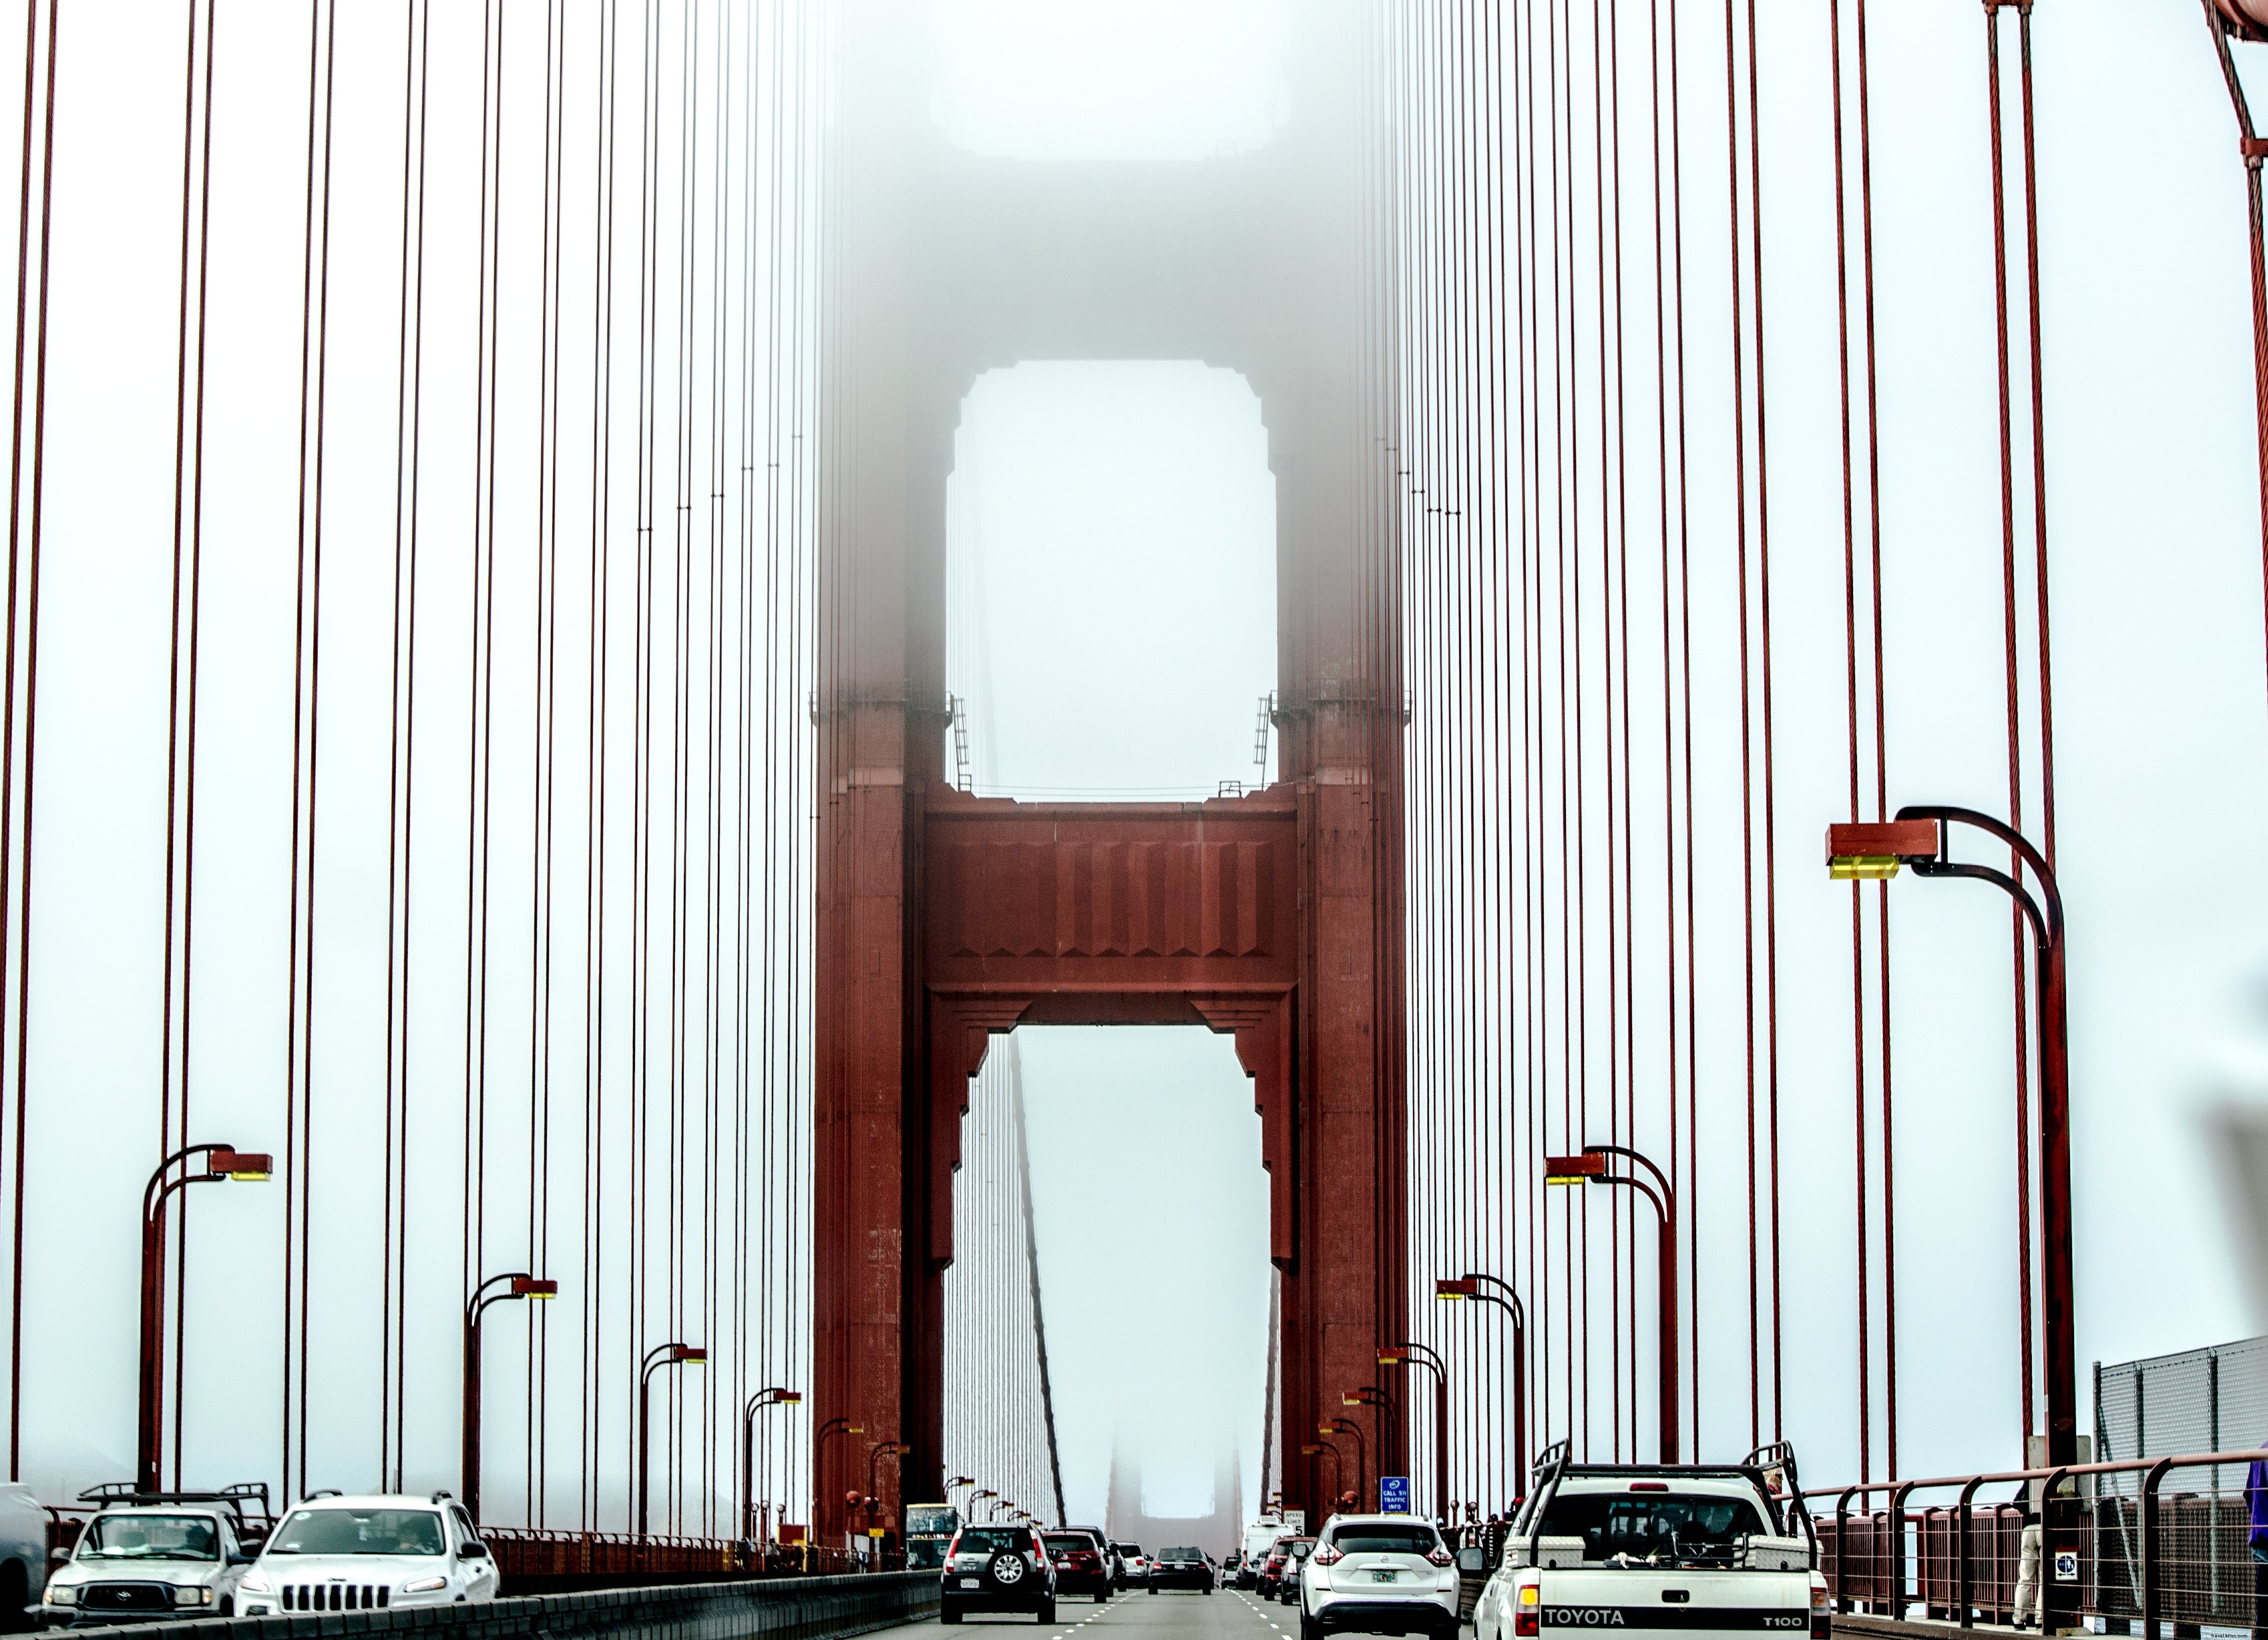 Foto de trânsito em ponte suspensa suspensa na névoa